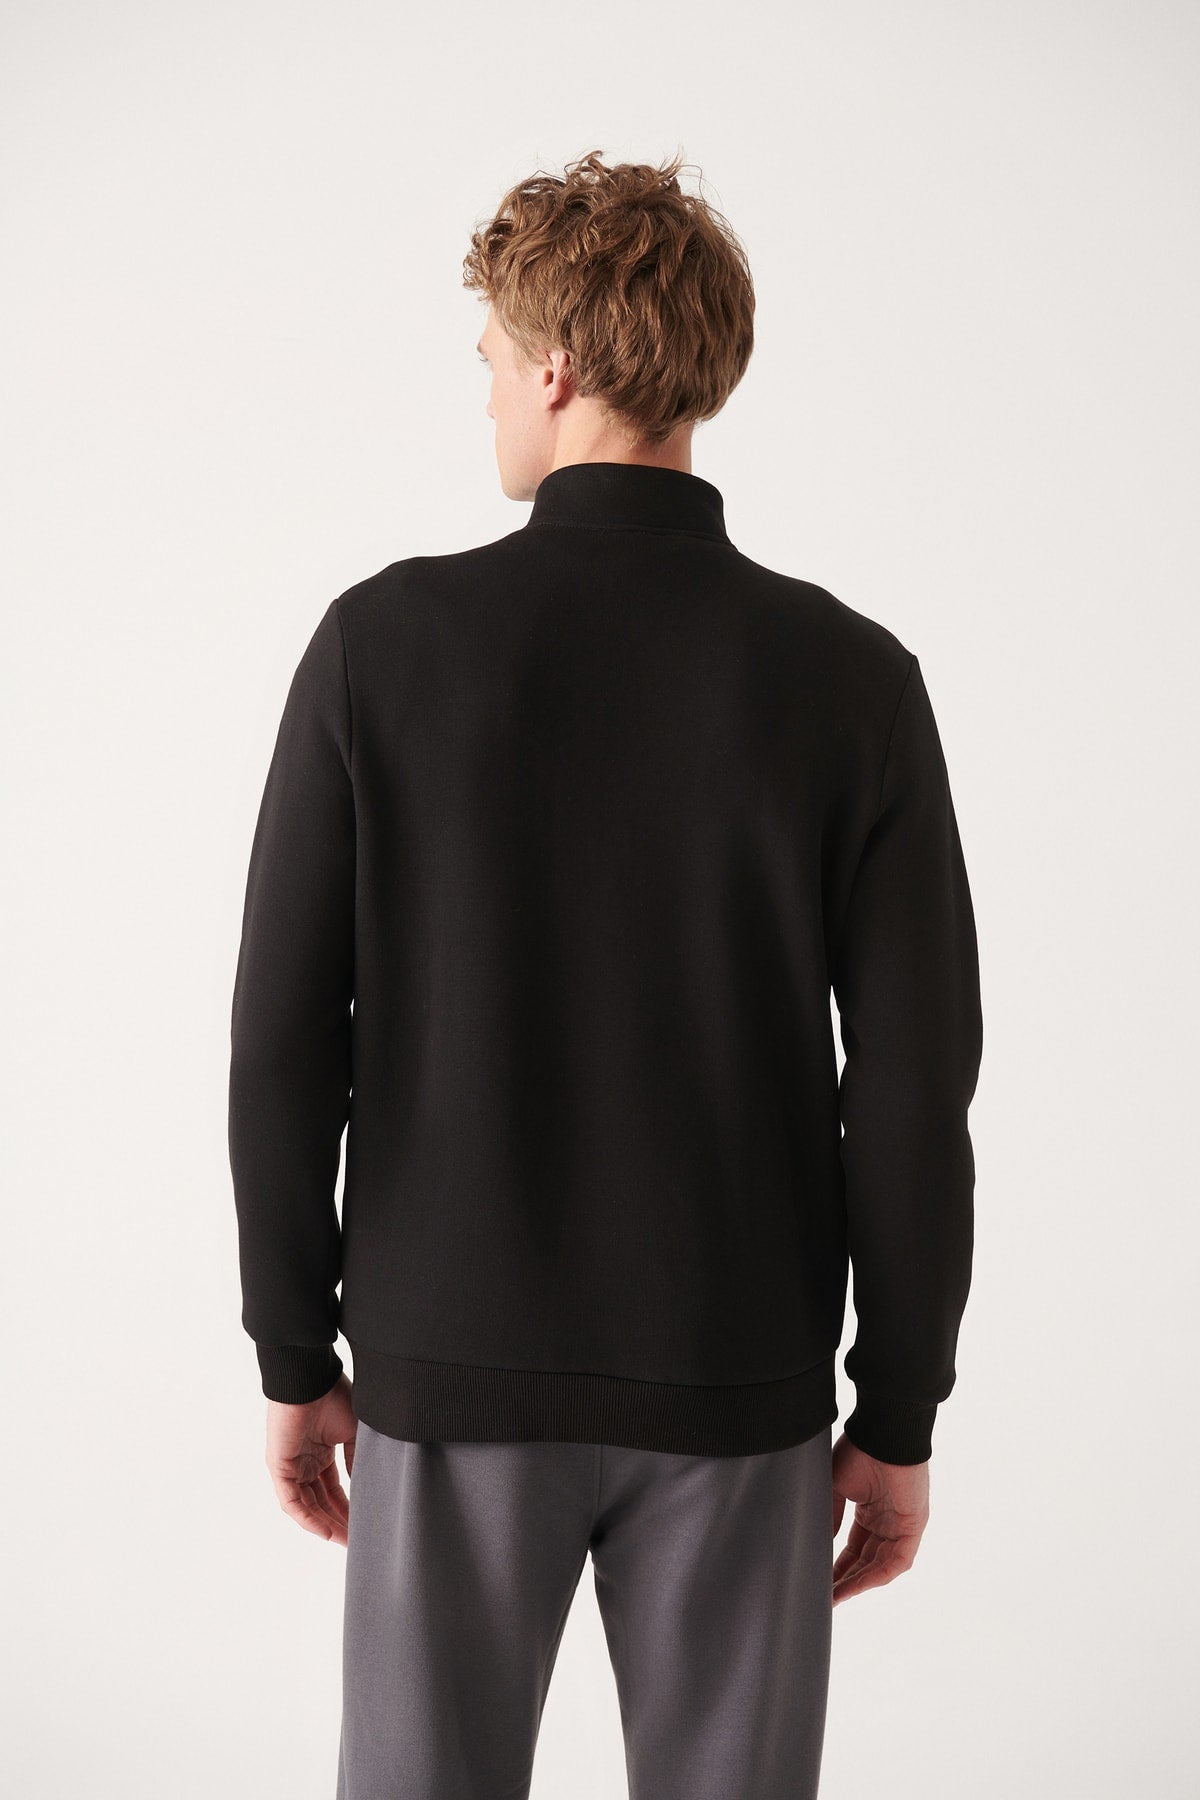 Unisex Black upright collar zipper Içi fleece cold -proof 3 IP Sweatshirt